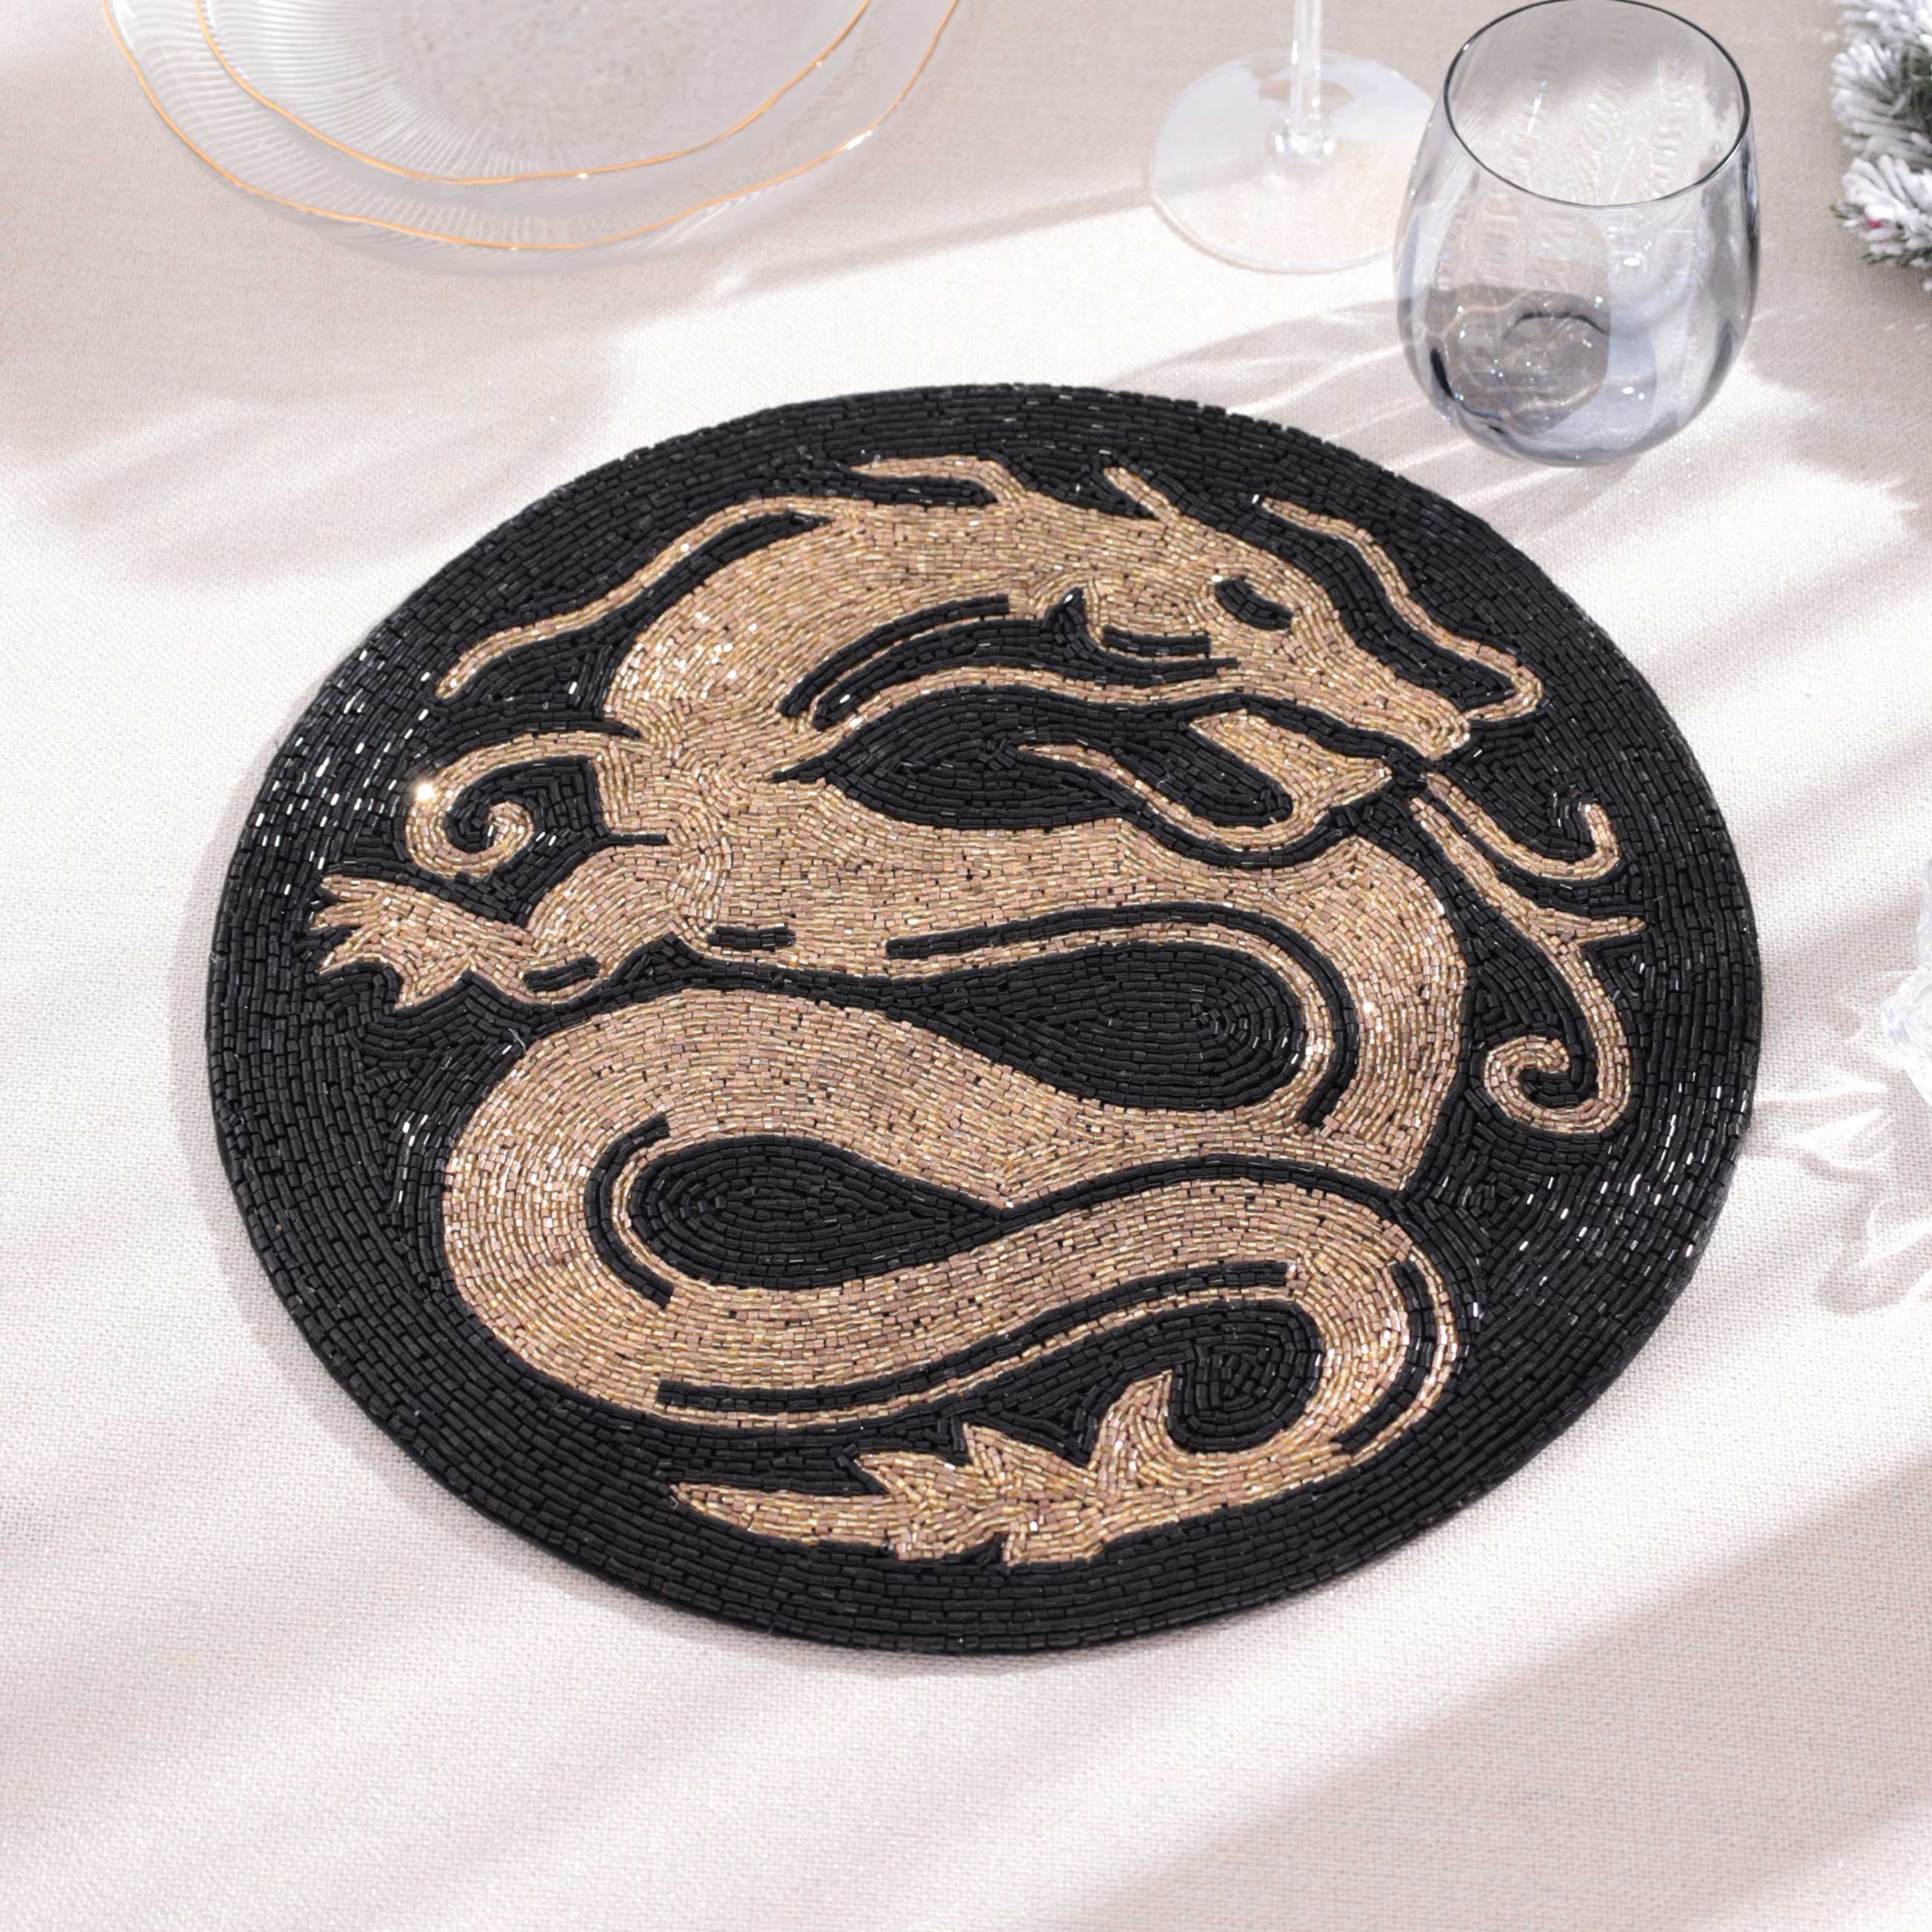 Салфетка под приборы, 36 см, бисер, круглая, золотисто-черная, Дракон, Art beads изображение № 4